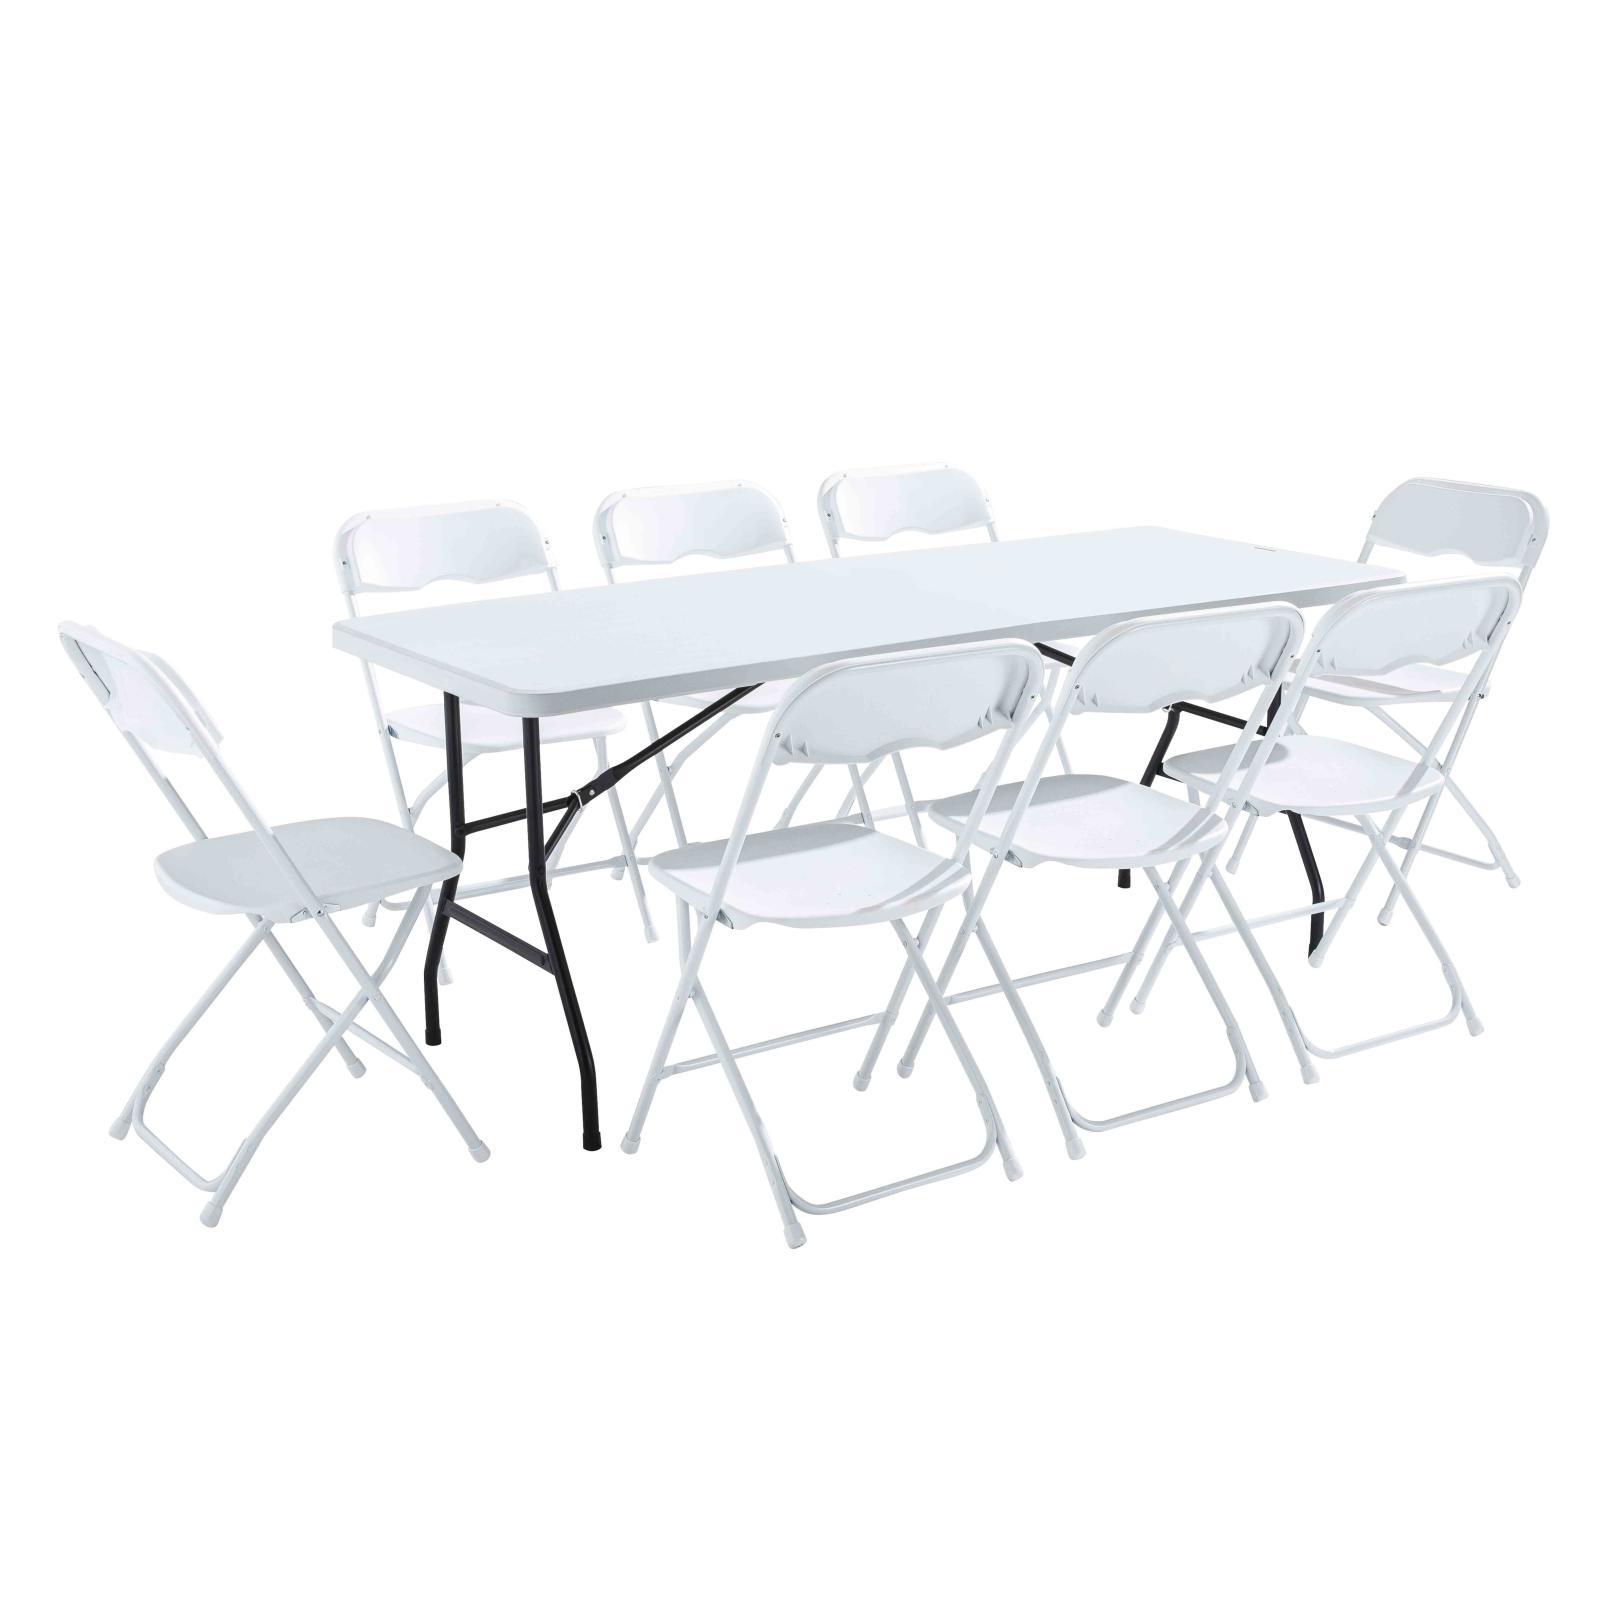 Table monobloc avec pieds pliants et 8 chaises pliantes | Mobeventpro